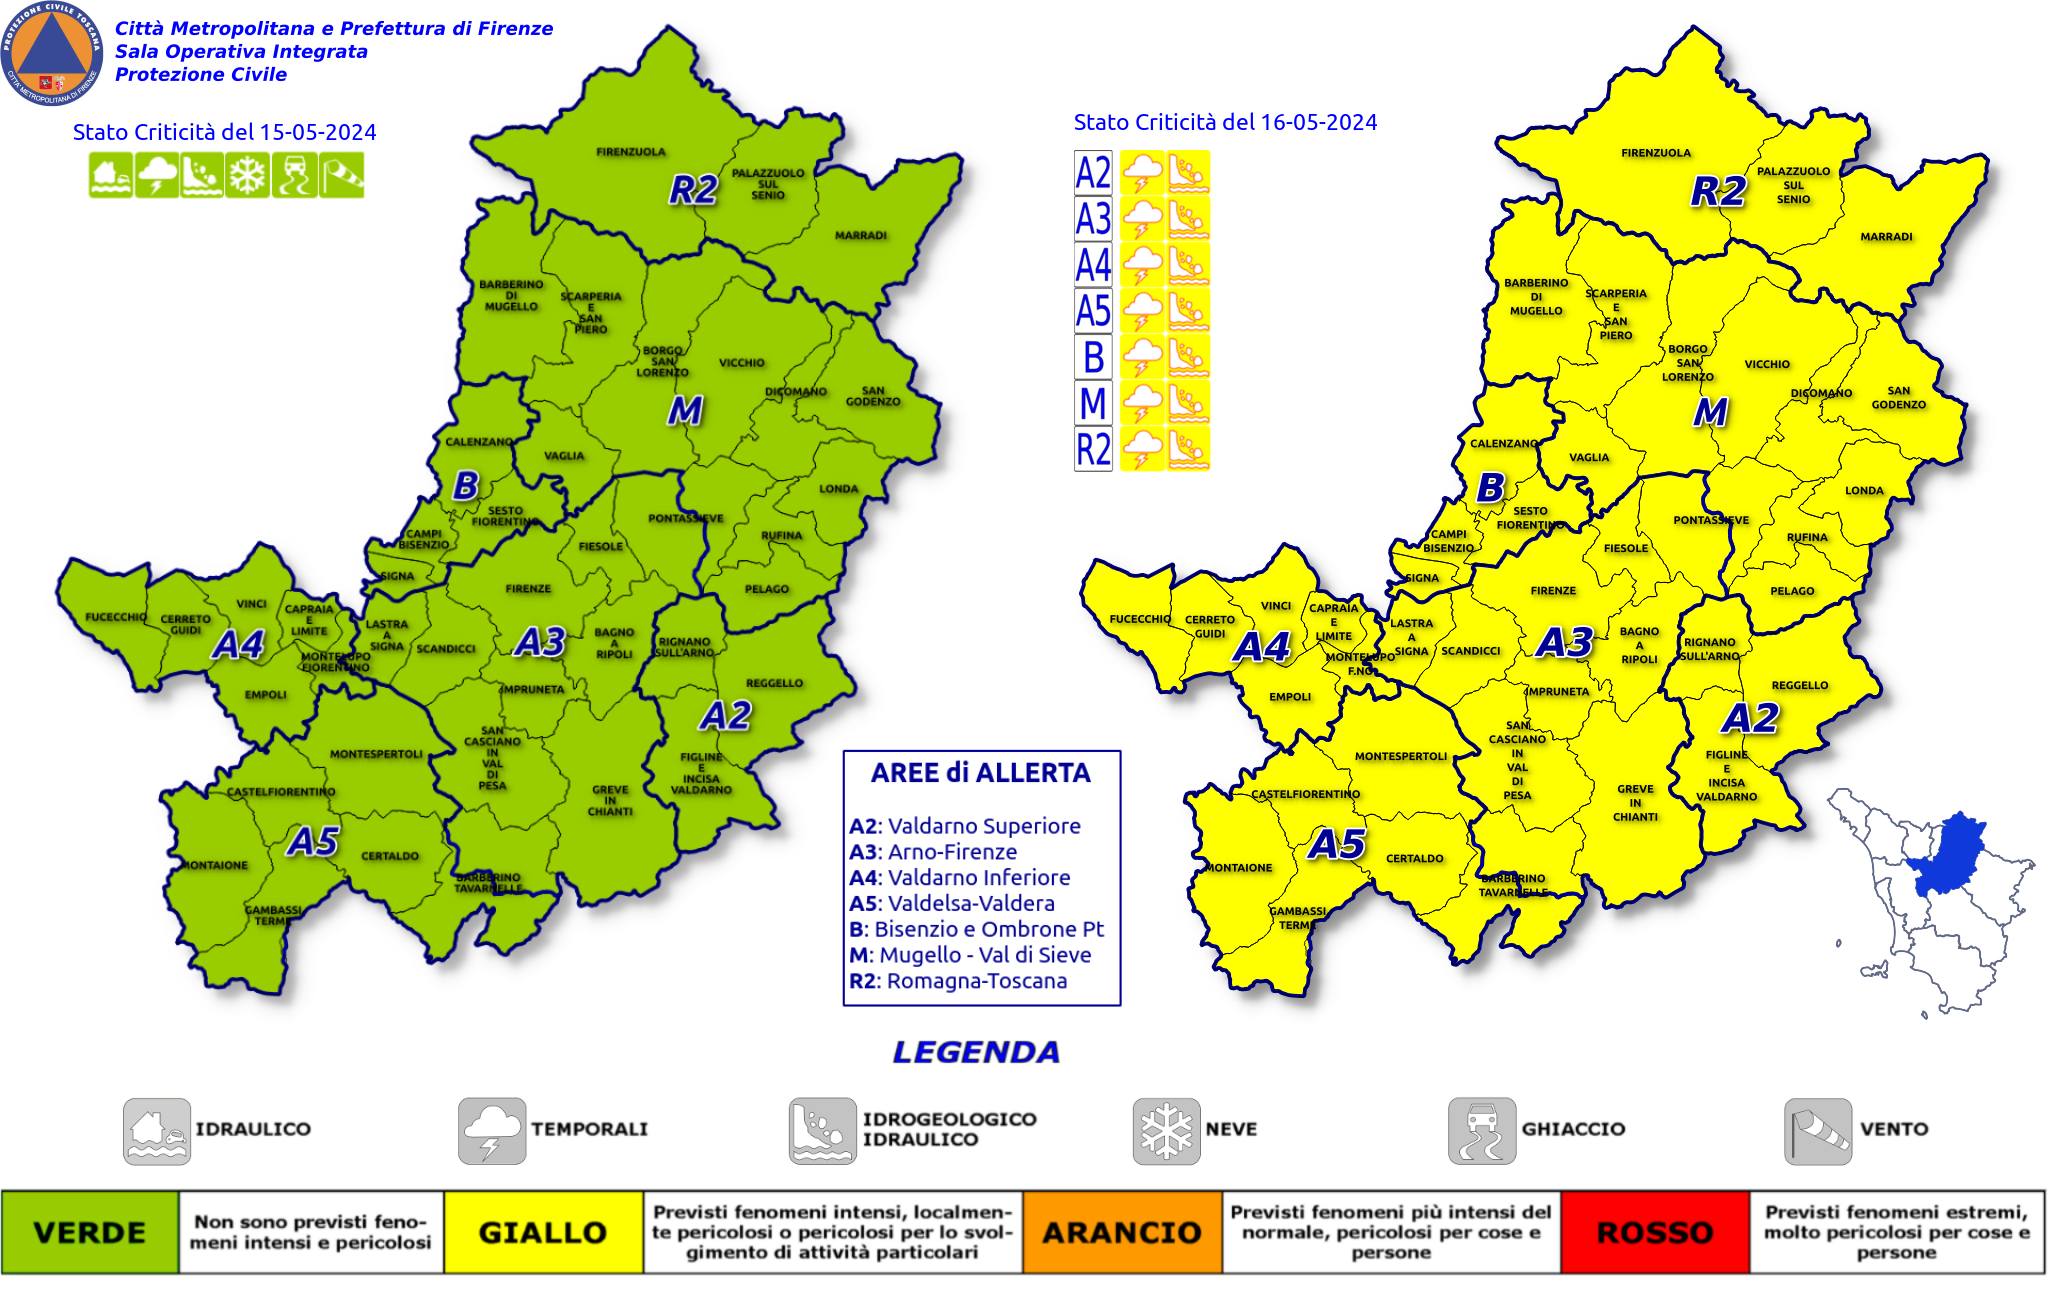 Codice giallo per maltempo nel territorio metropolitano fiorentino